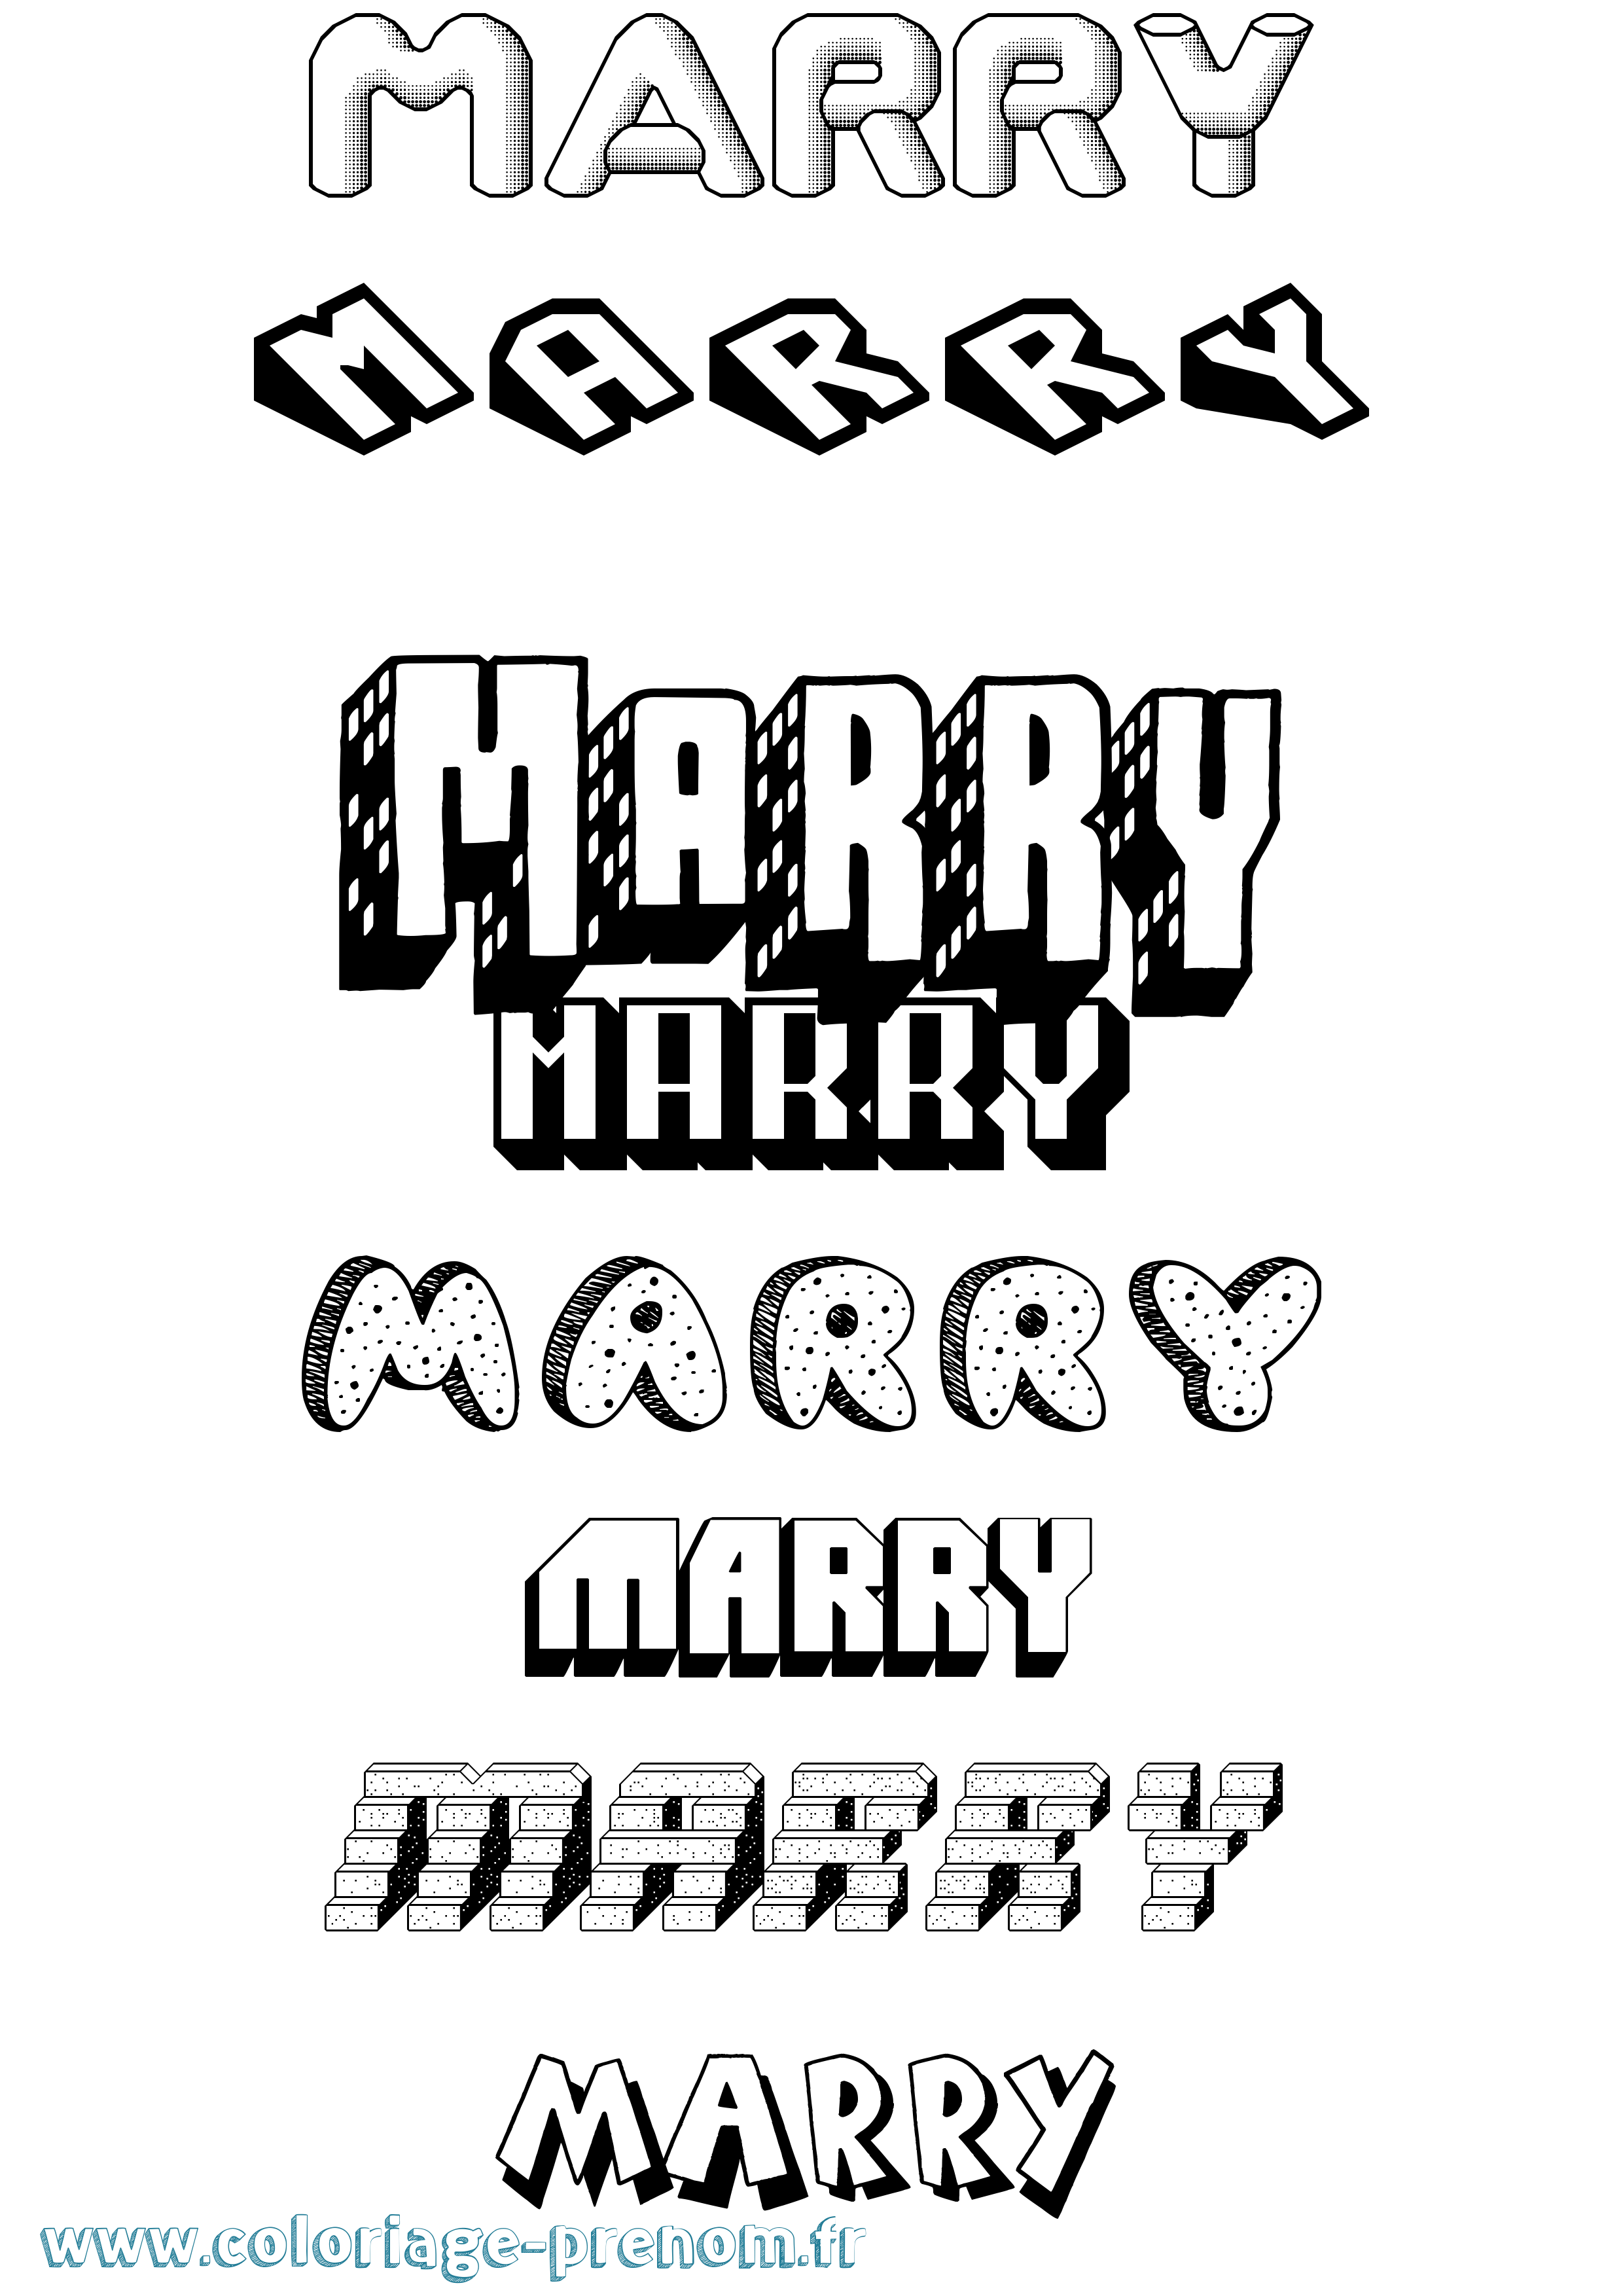 Coloriage prénom Marry Effet 3D